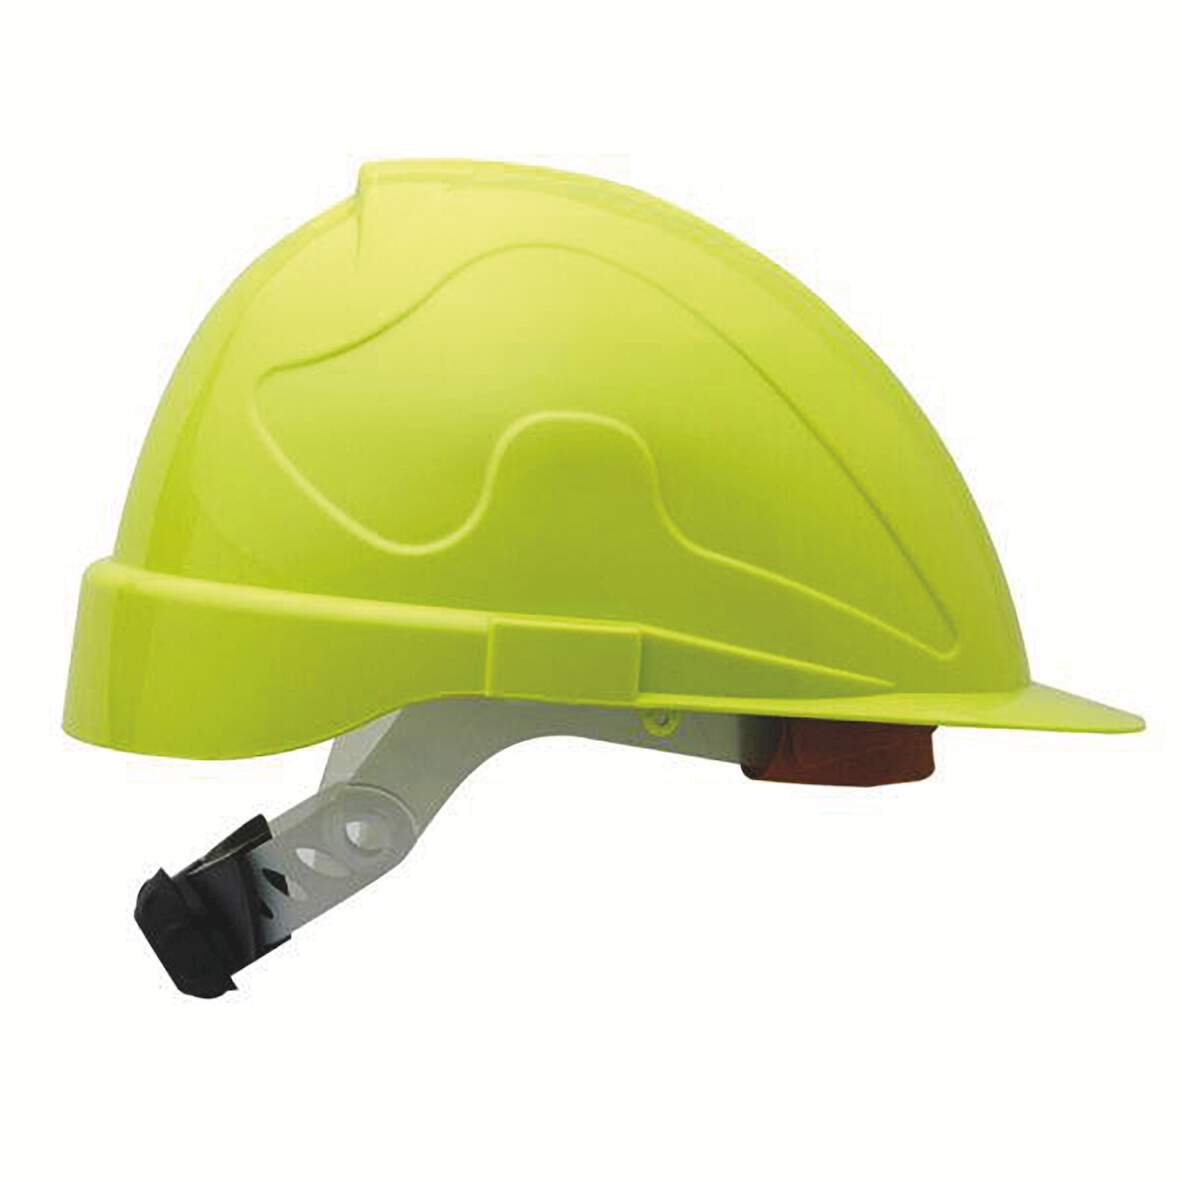 1245921 - Bauschutz-Helm neongelb Modell Meister